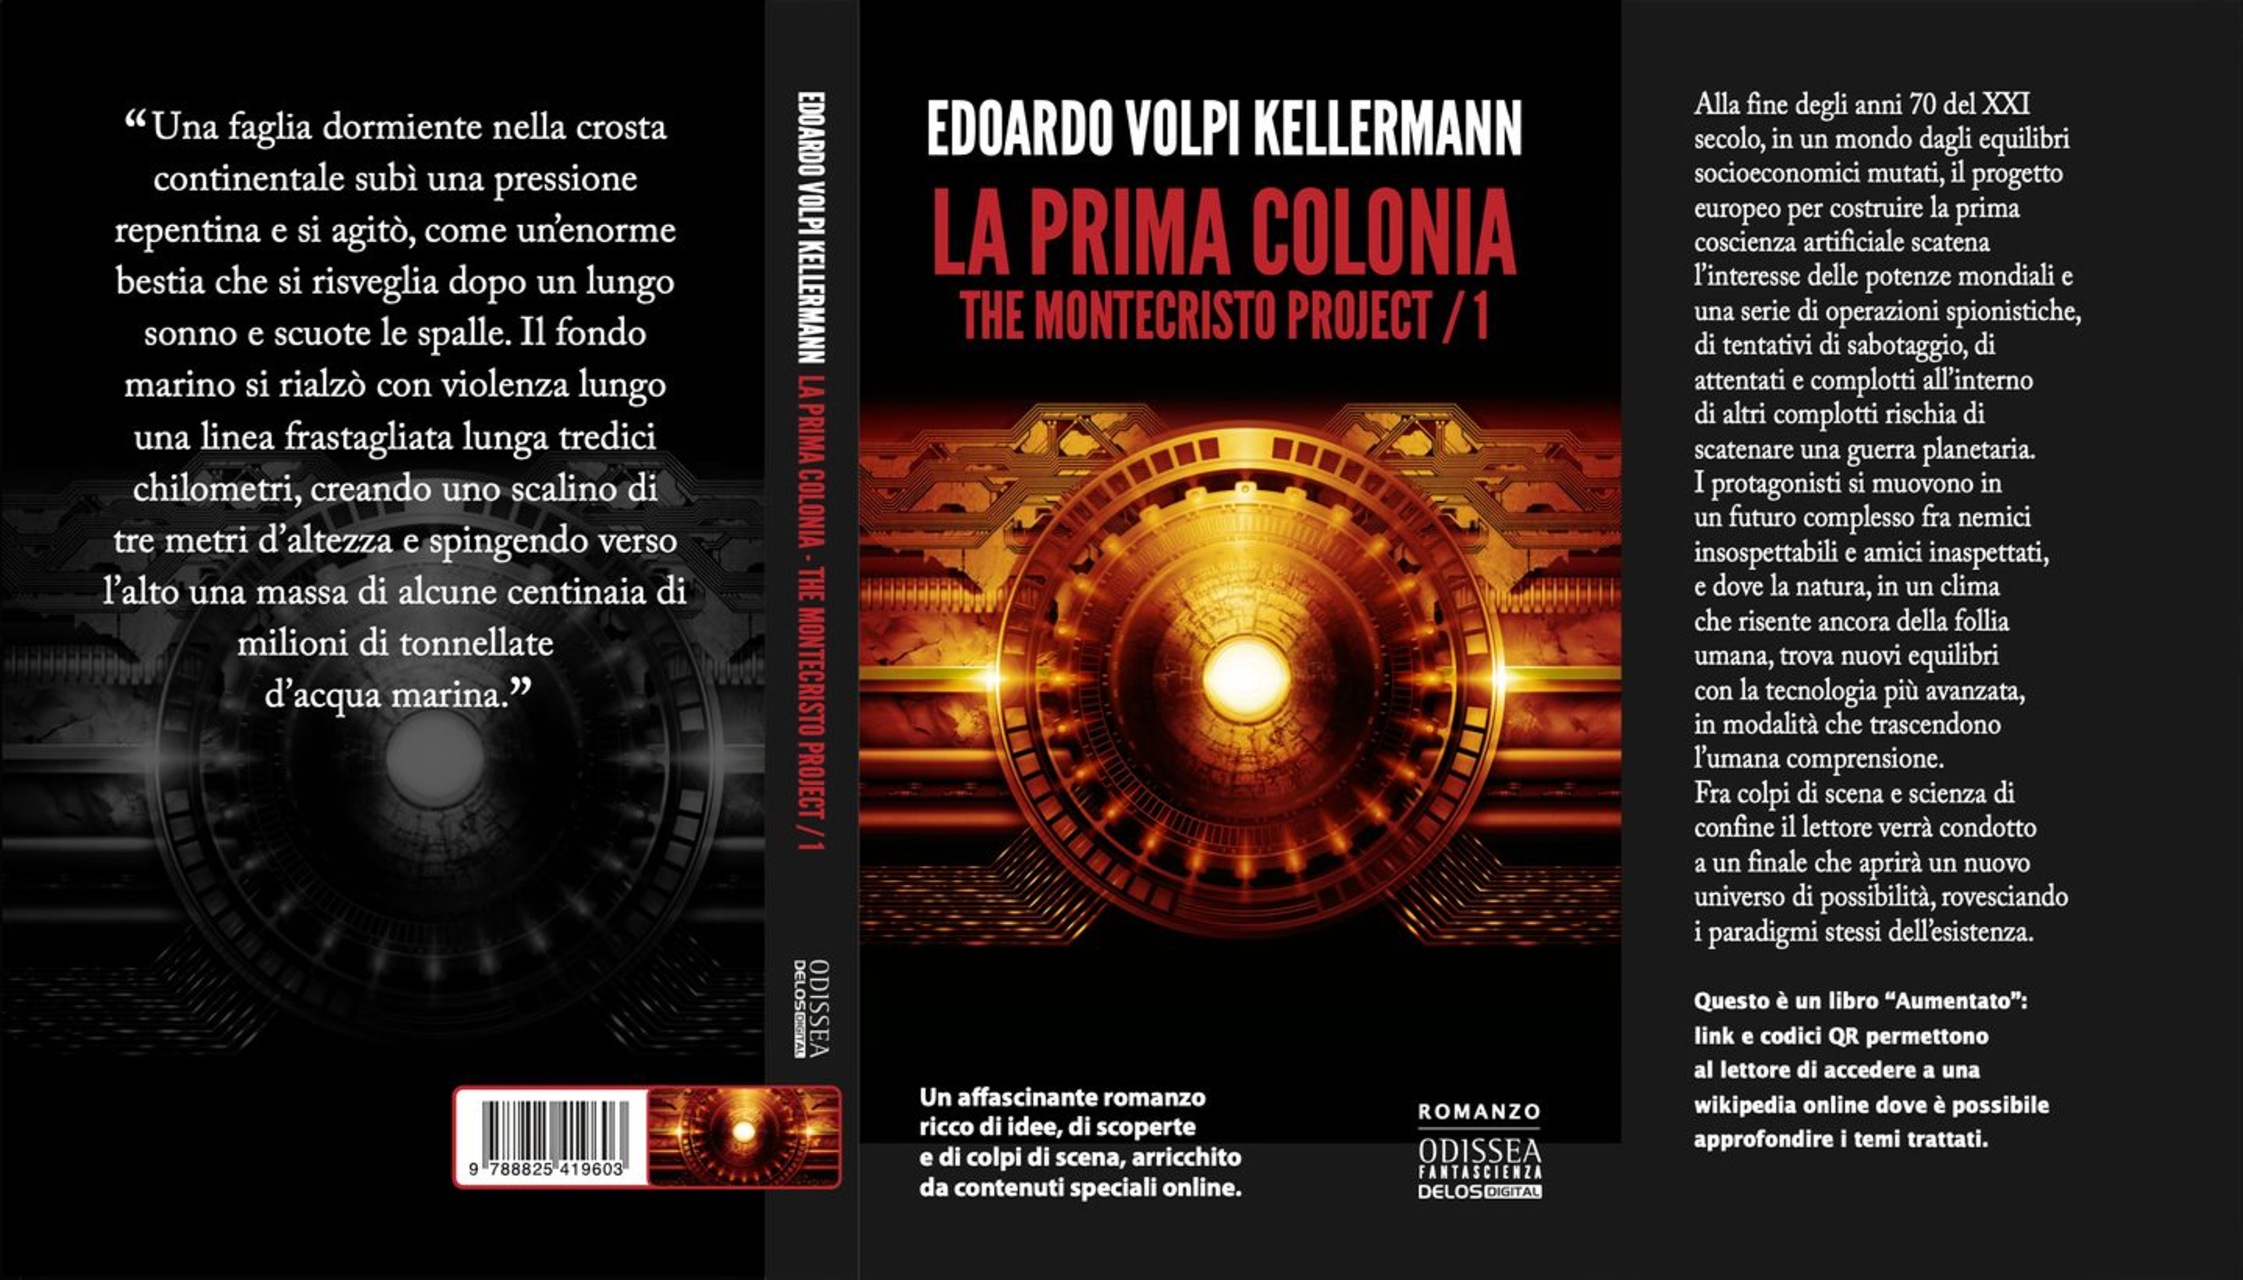 Letteratura innovativa: la copertina dell’edizione cartacea di “The Montecristo Project – La prima colonia” di Edoardo Volpi Kellermann